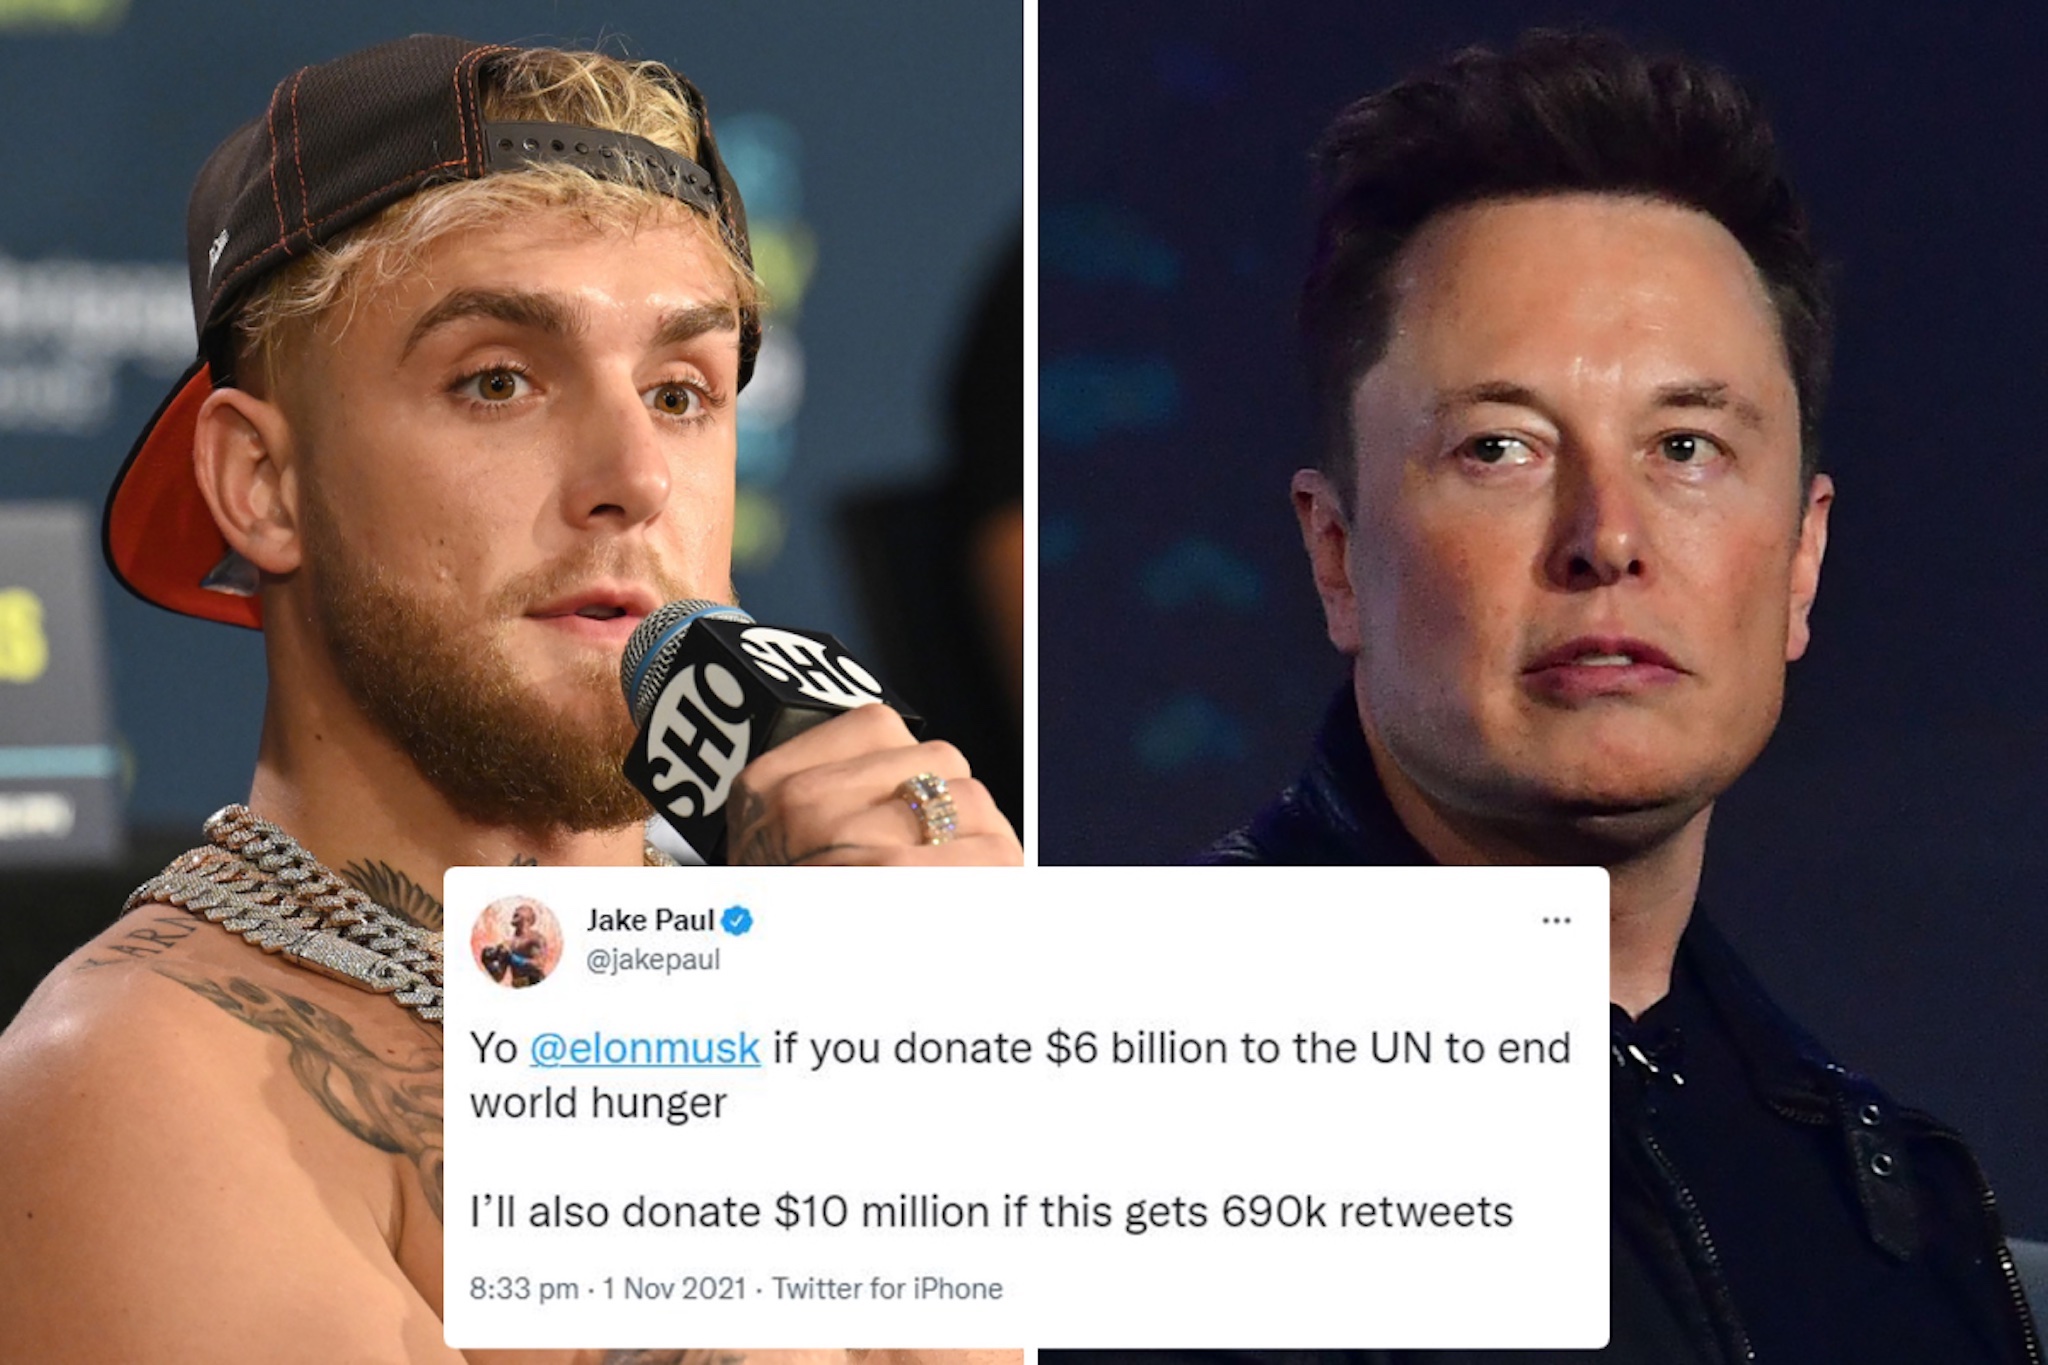 Tiếp nối Elon Musk, một YouTuber cũng ra điều kiện để quyên góp 10 triệu USD giải quyết nạn đói